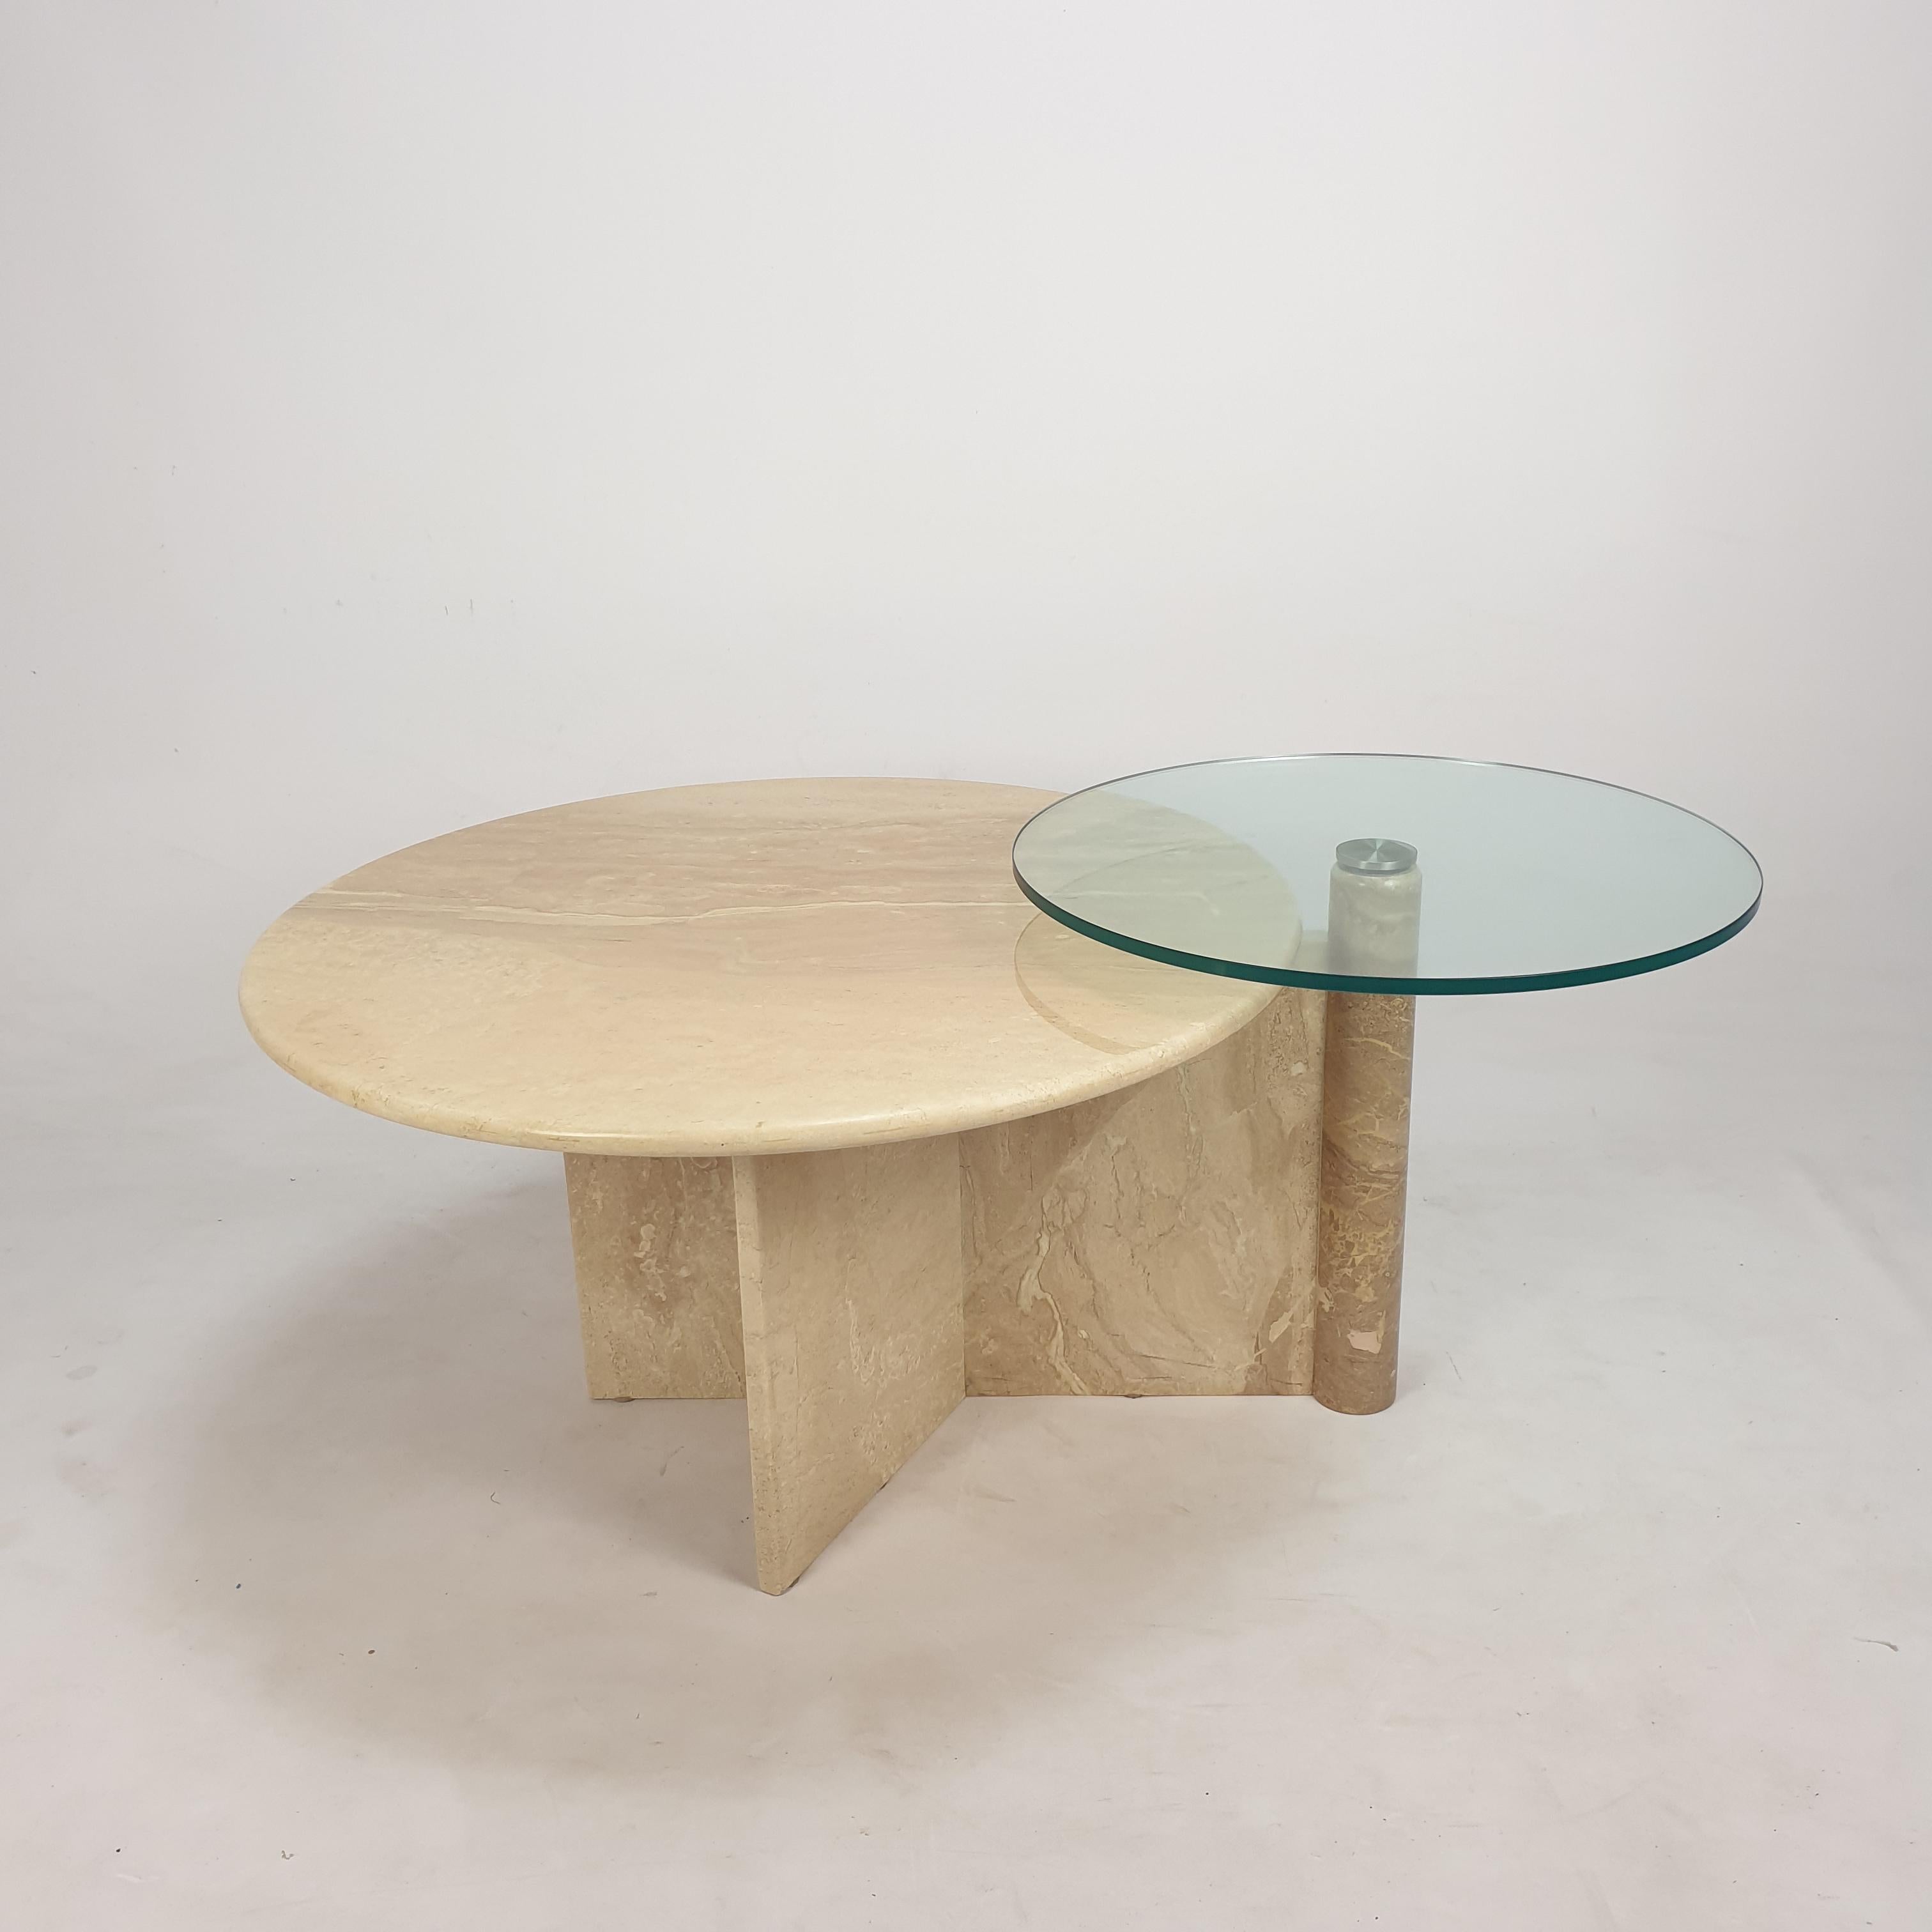 Très belle table basse italienne des années 80, fabriquée à la main en travertin. 
Une plaque ronde en travertin et une plaque tournante en verre.

La table est faite d'un magnifique travertin.